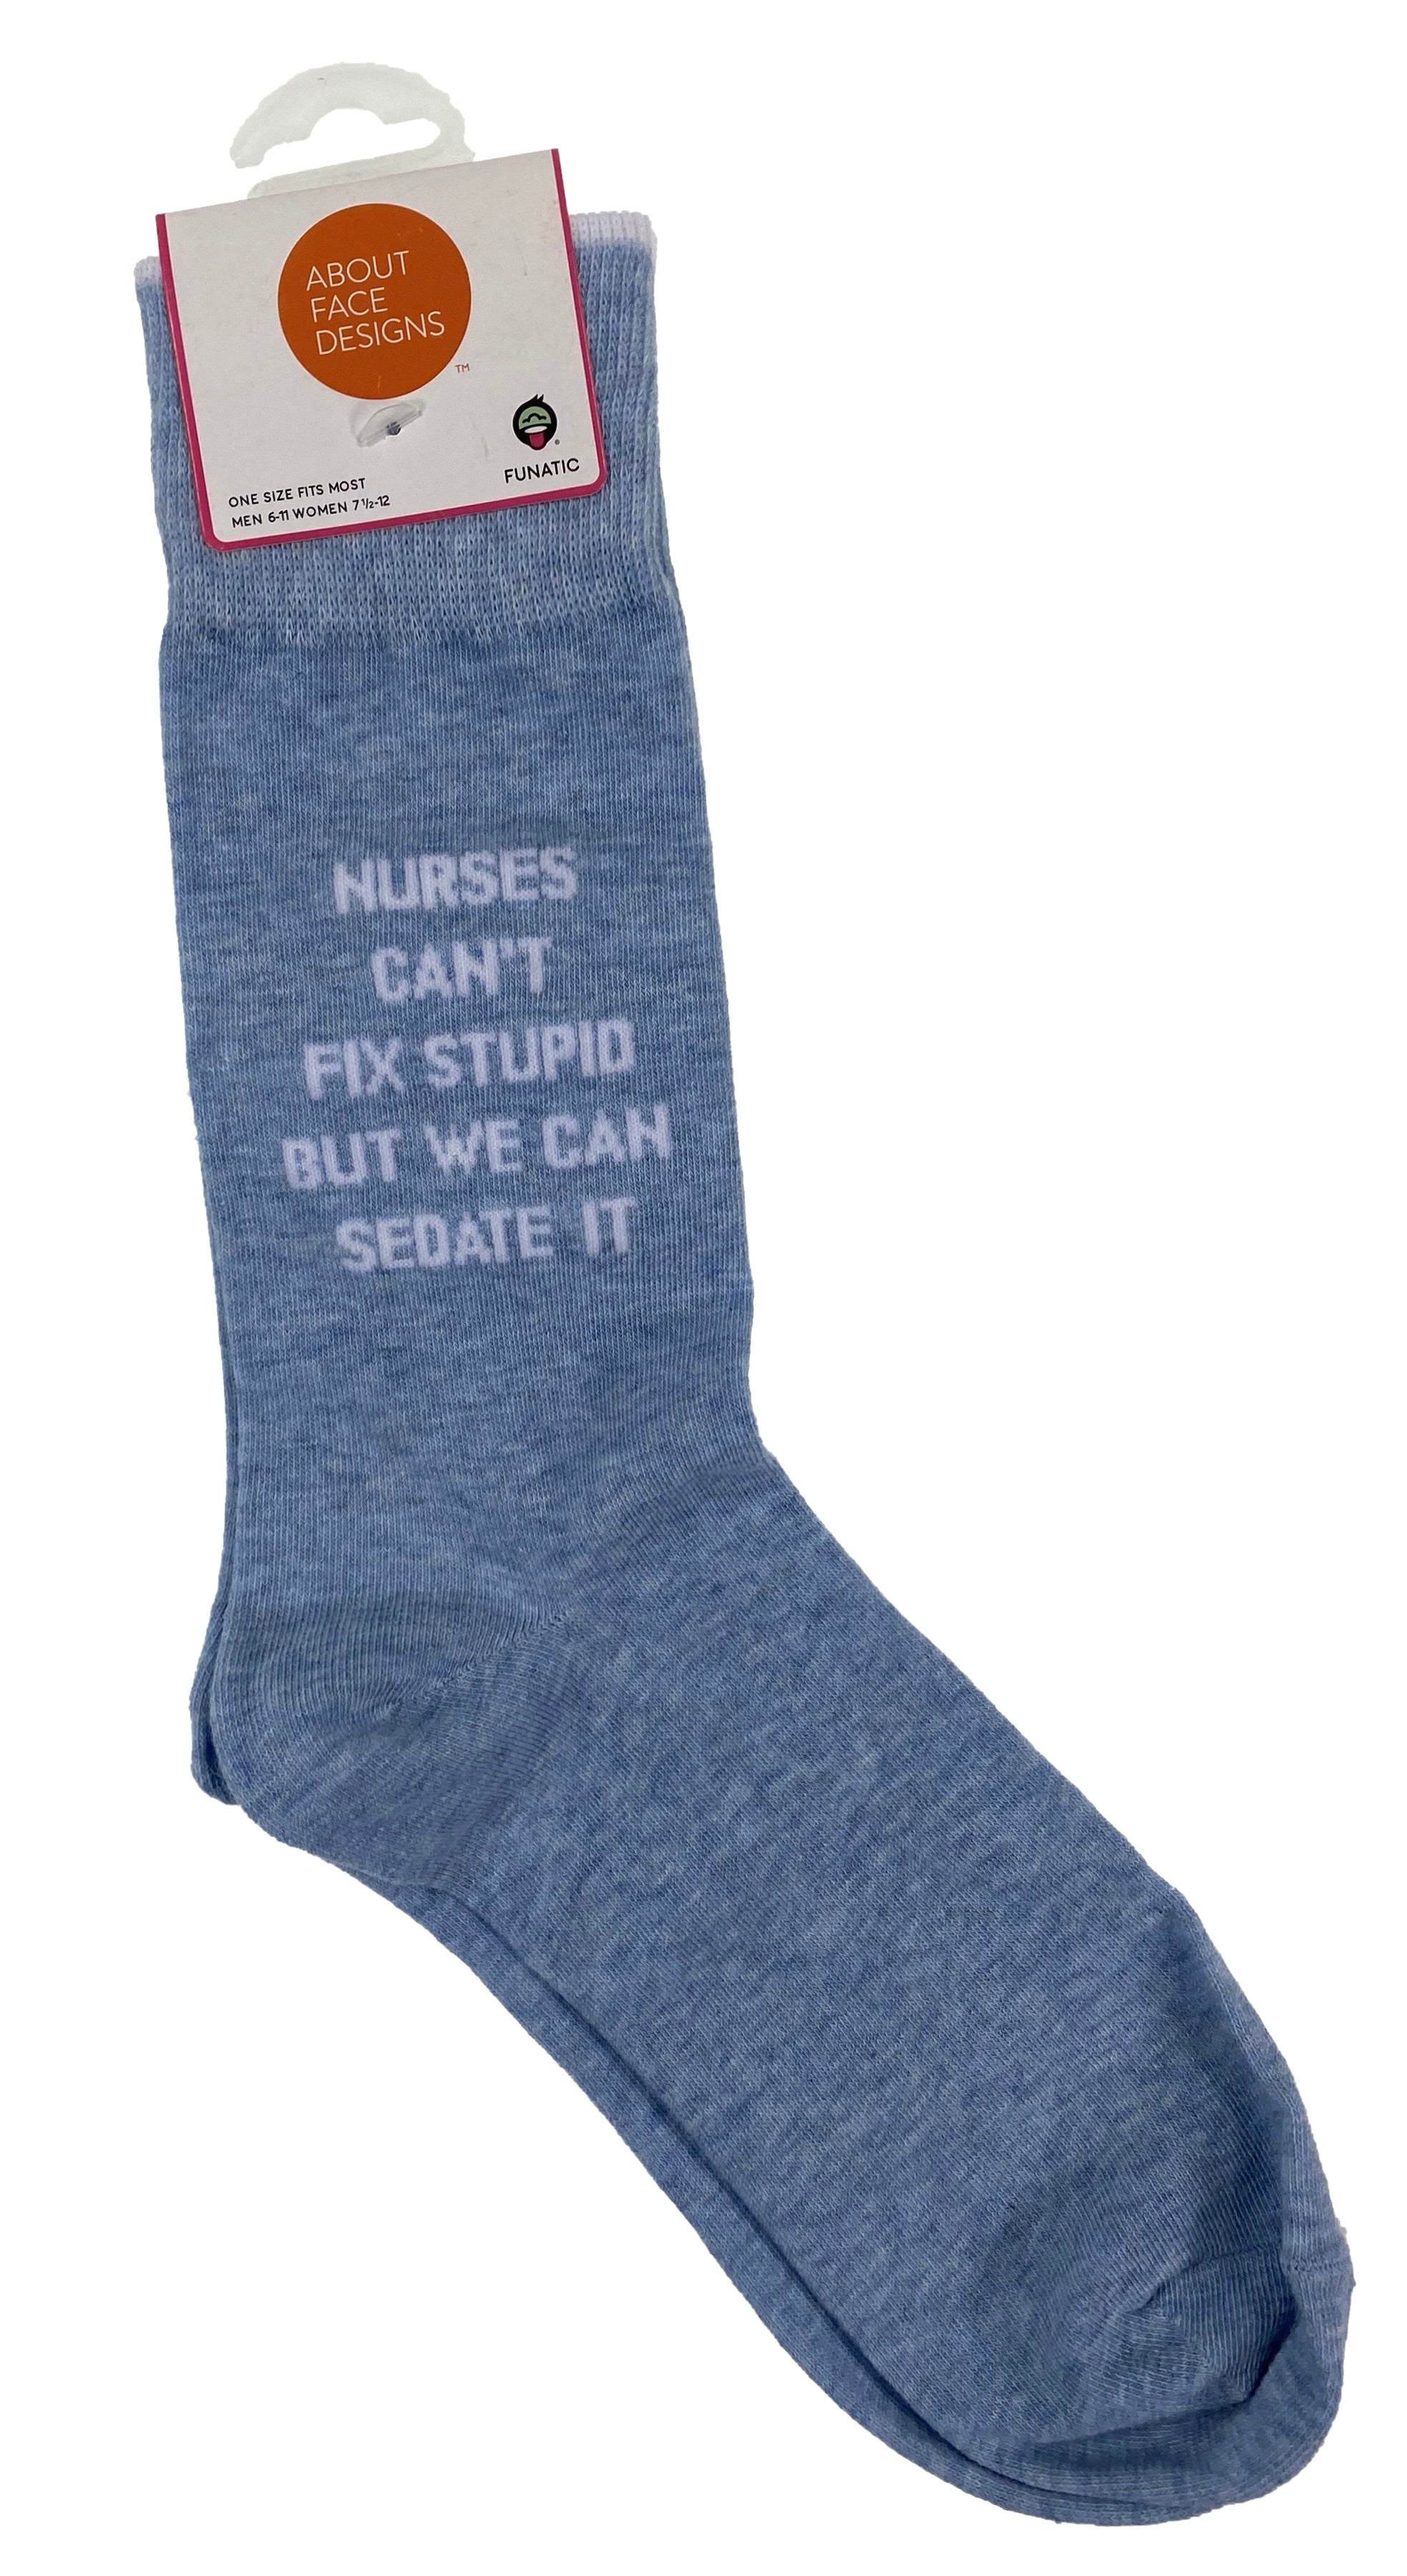 Funatic Crew Socks Nurses Can't Fix Stupid But We Can Sedate It    